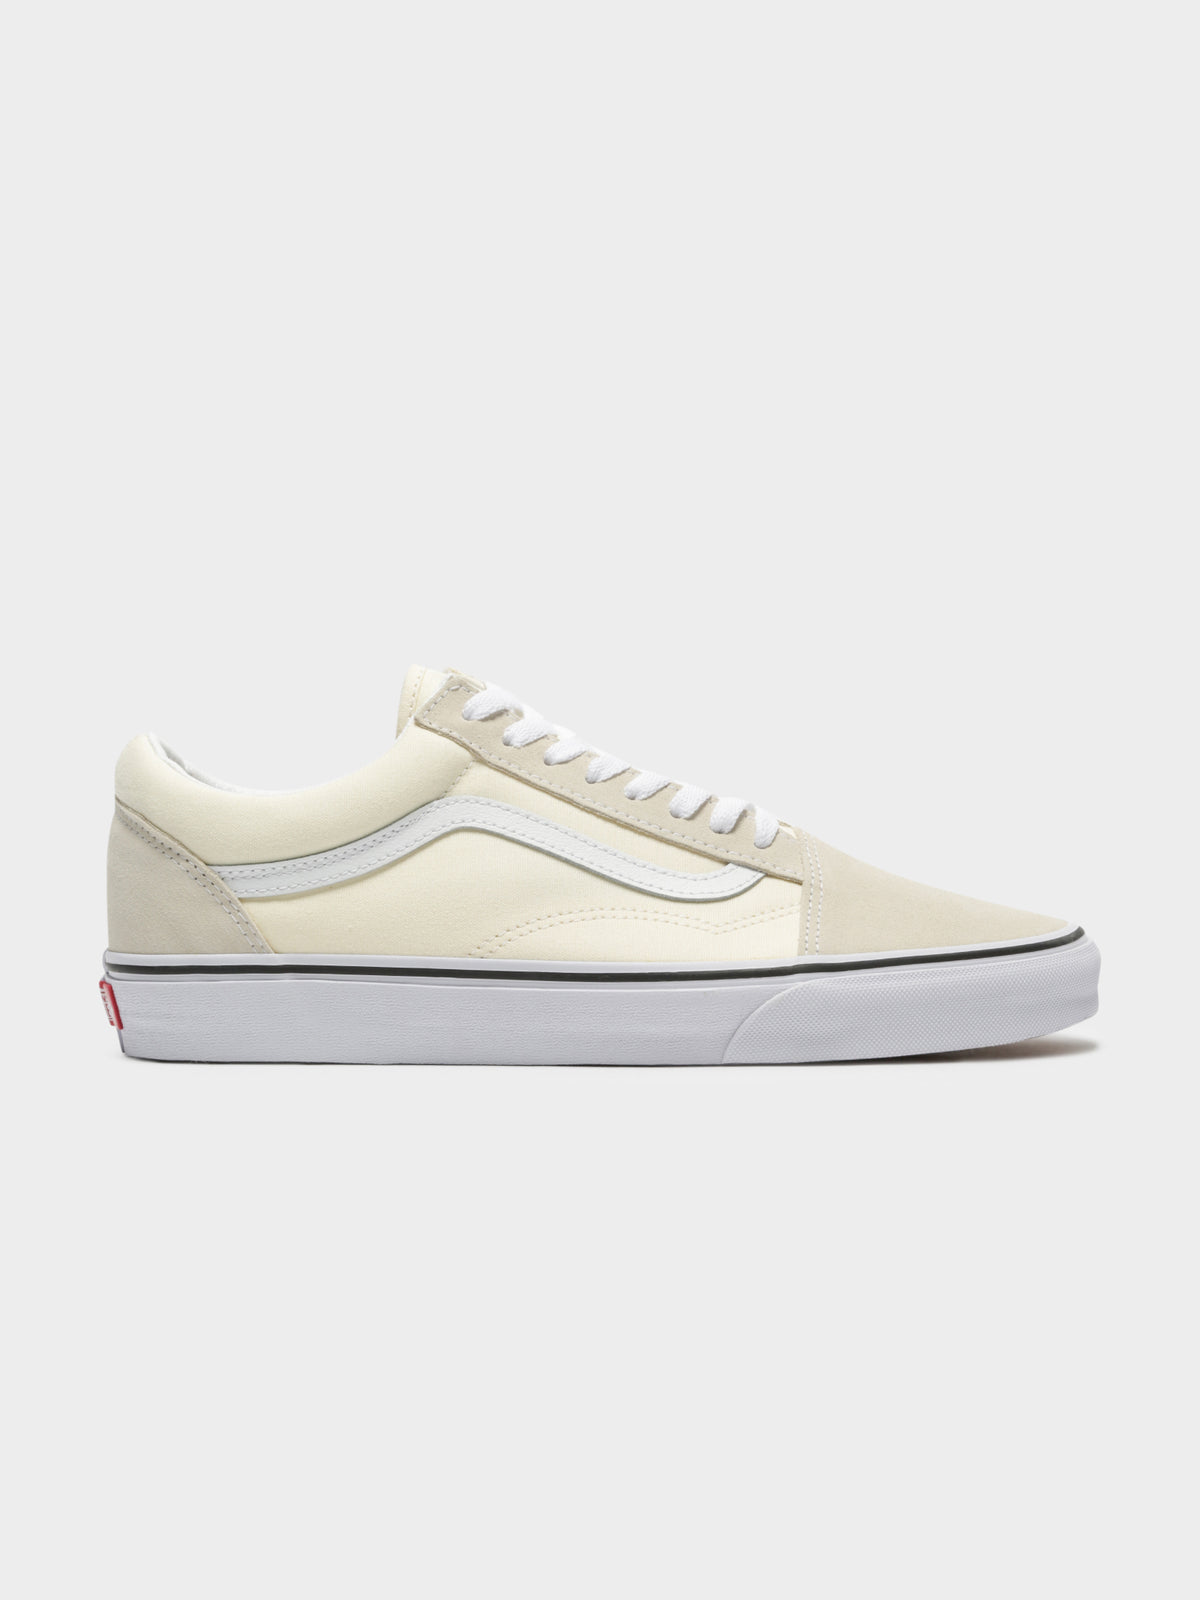 Unisex Old Skool Sneakers in Off White